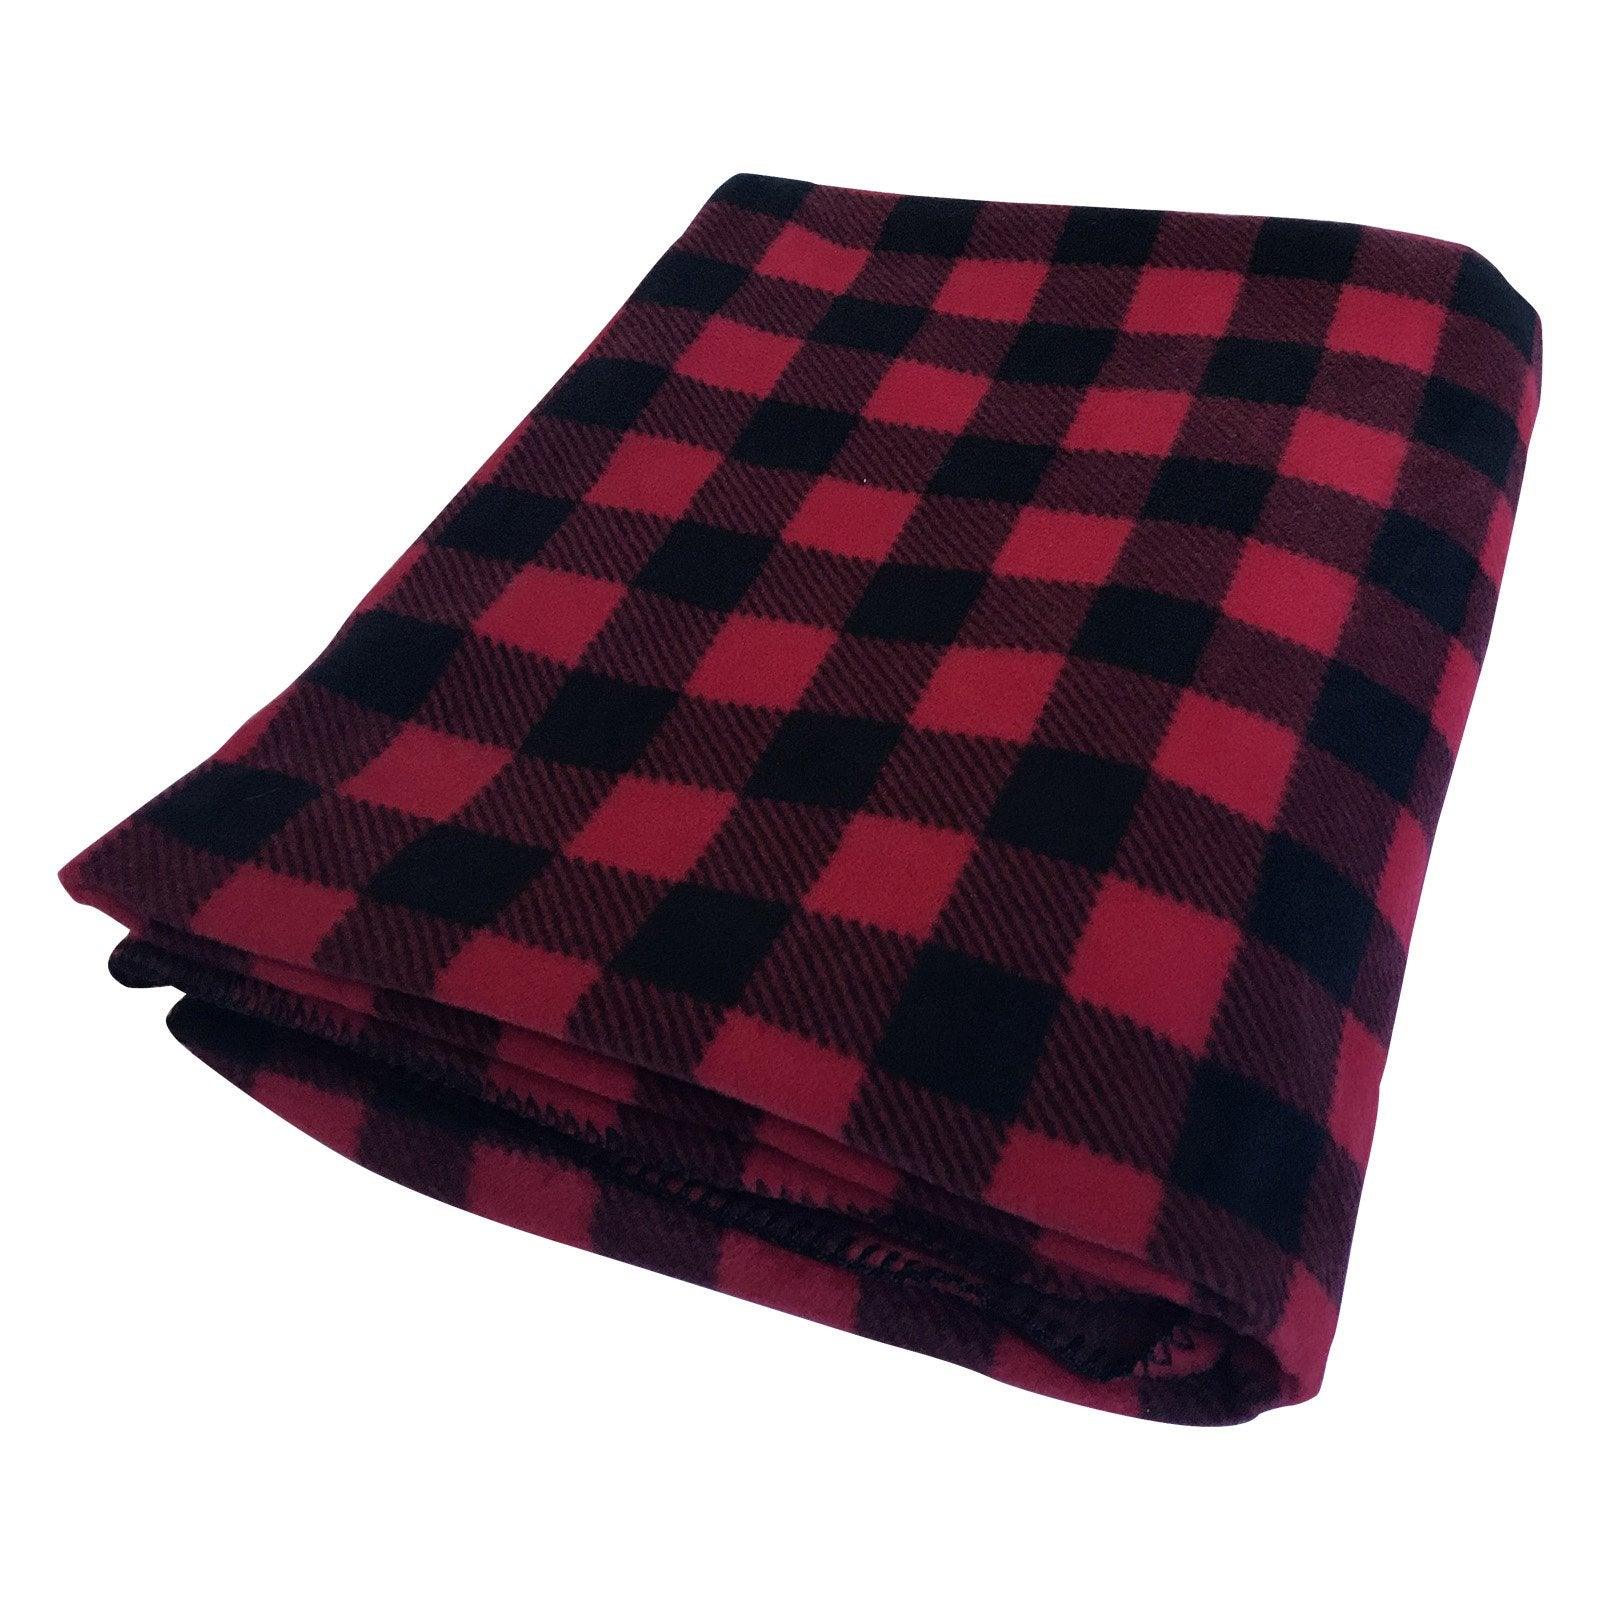 Buffalo Check Pattern Fleece Western Blanket in Red & Black